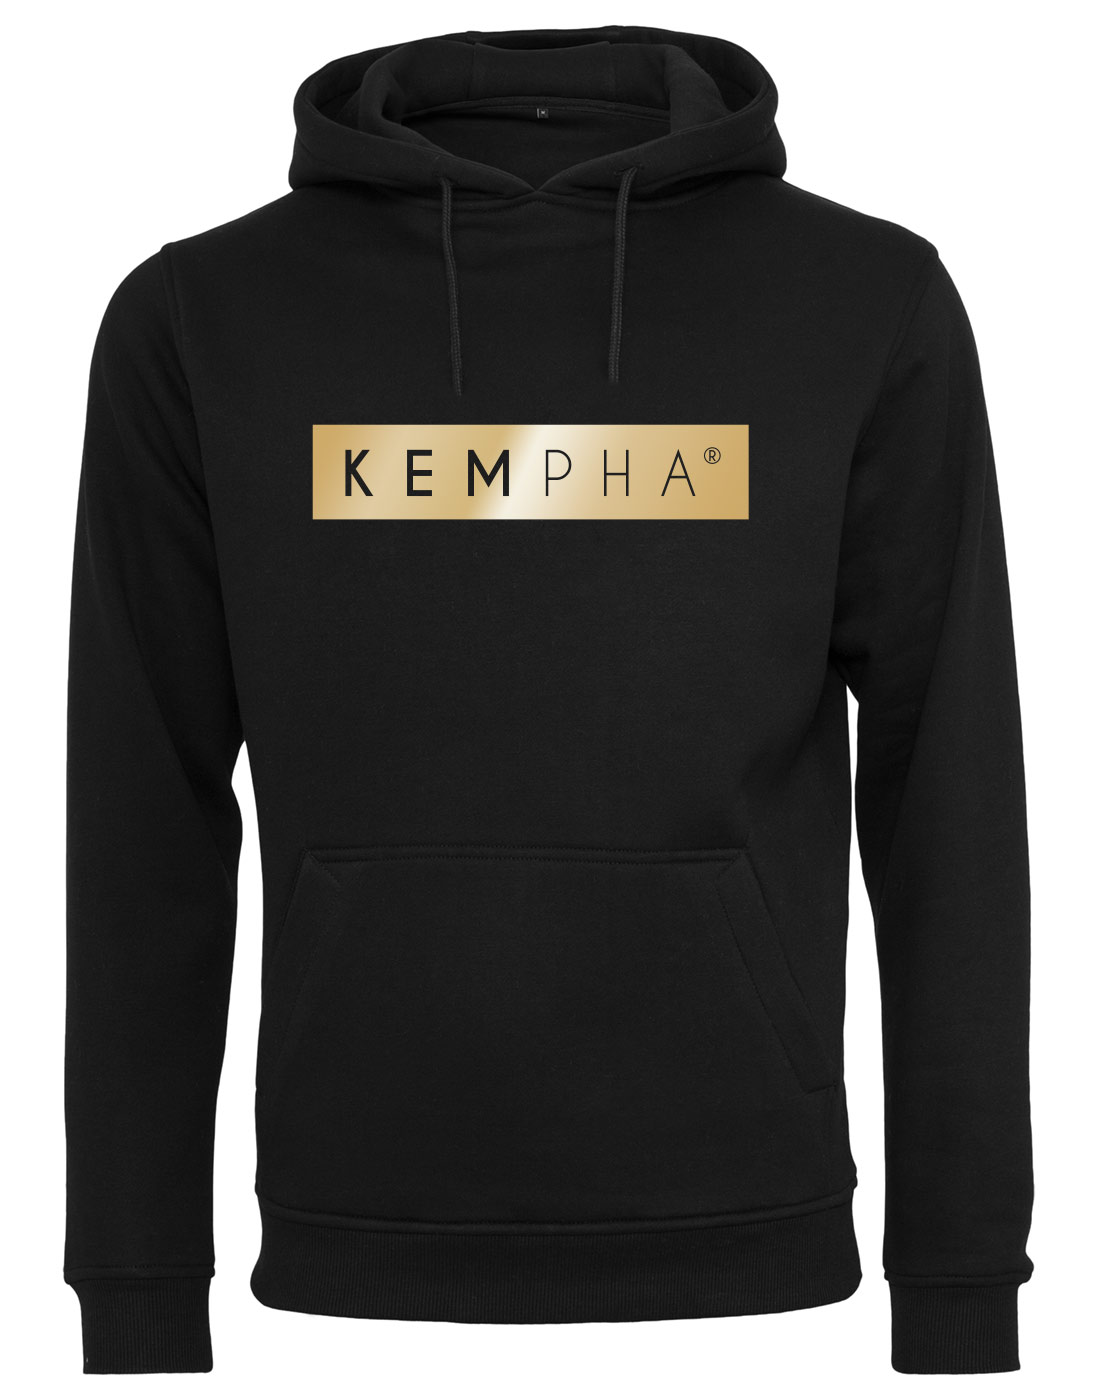 Kempha Premium Hoodie gold auf schwarz